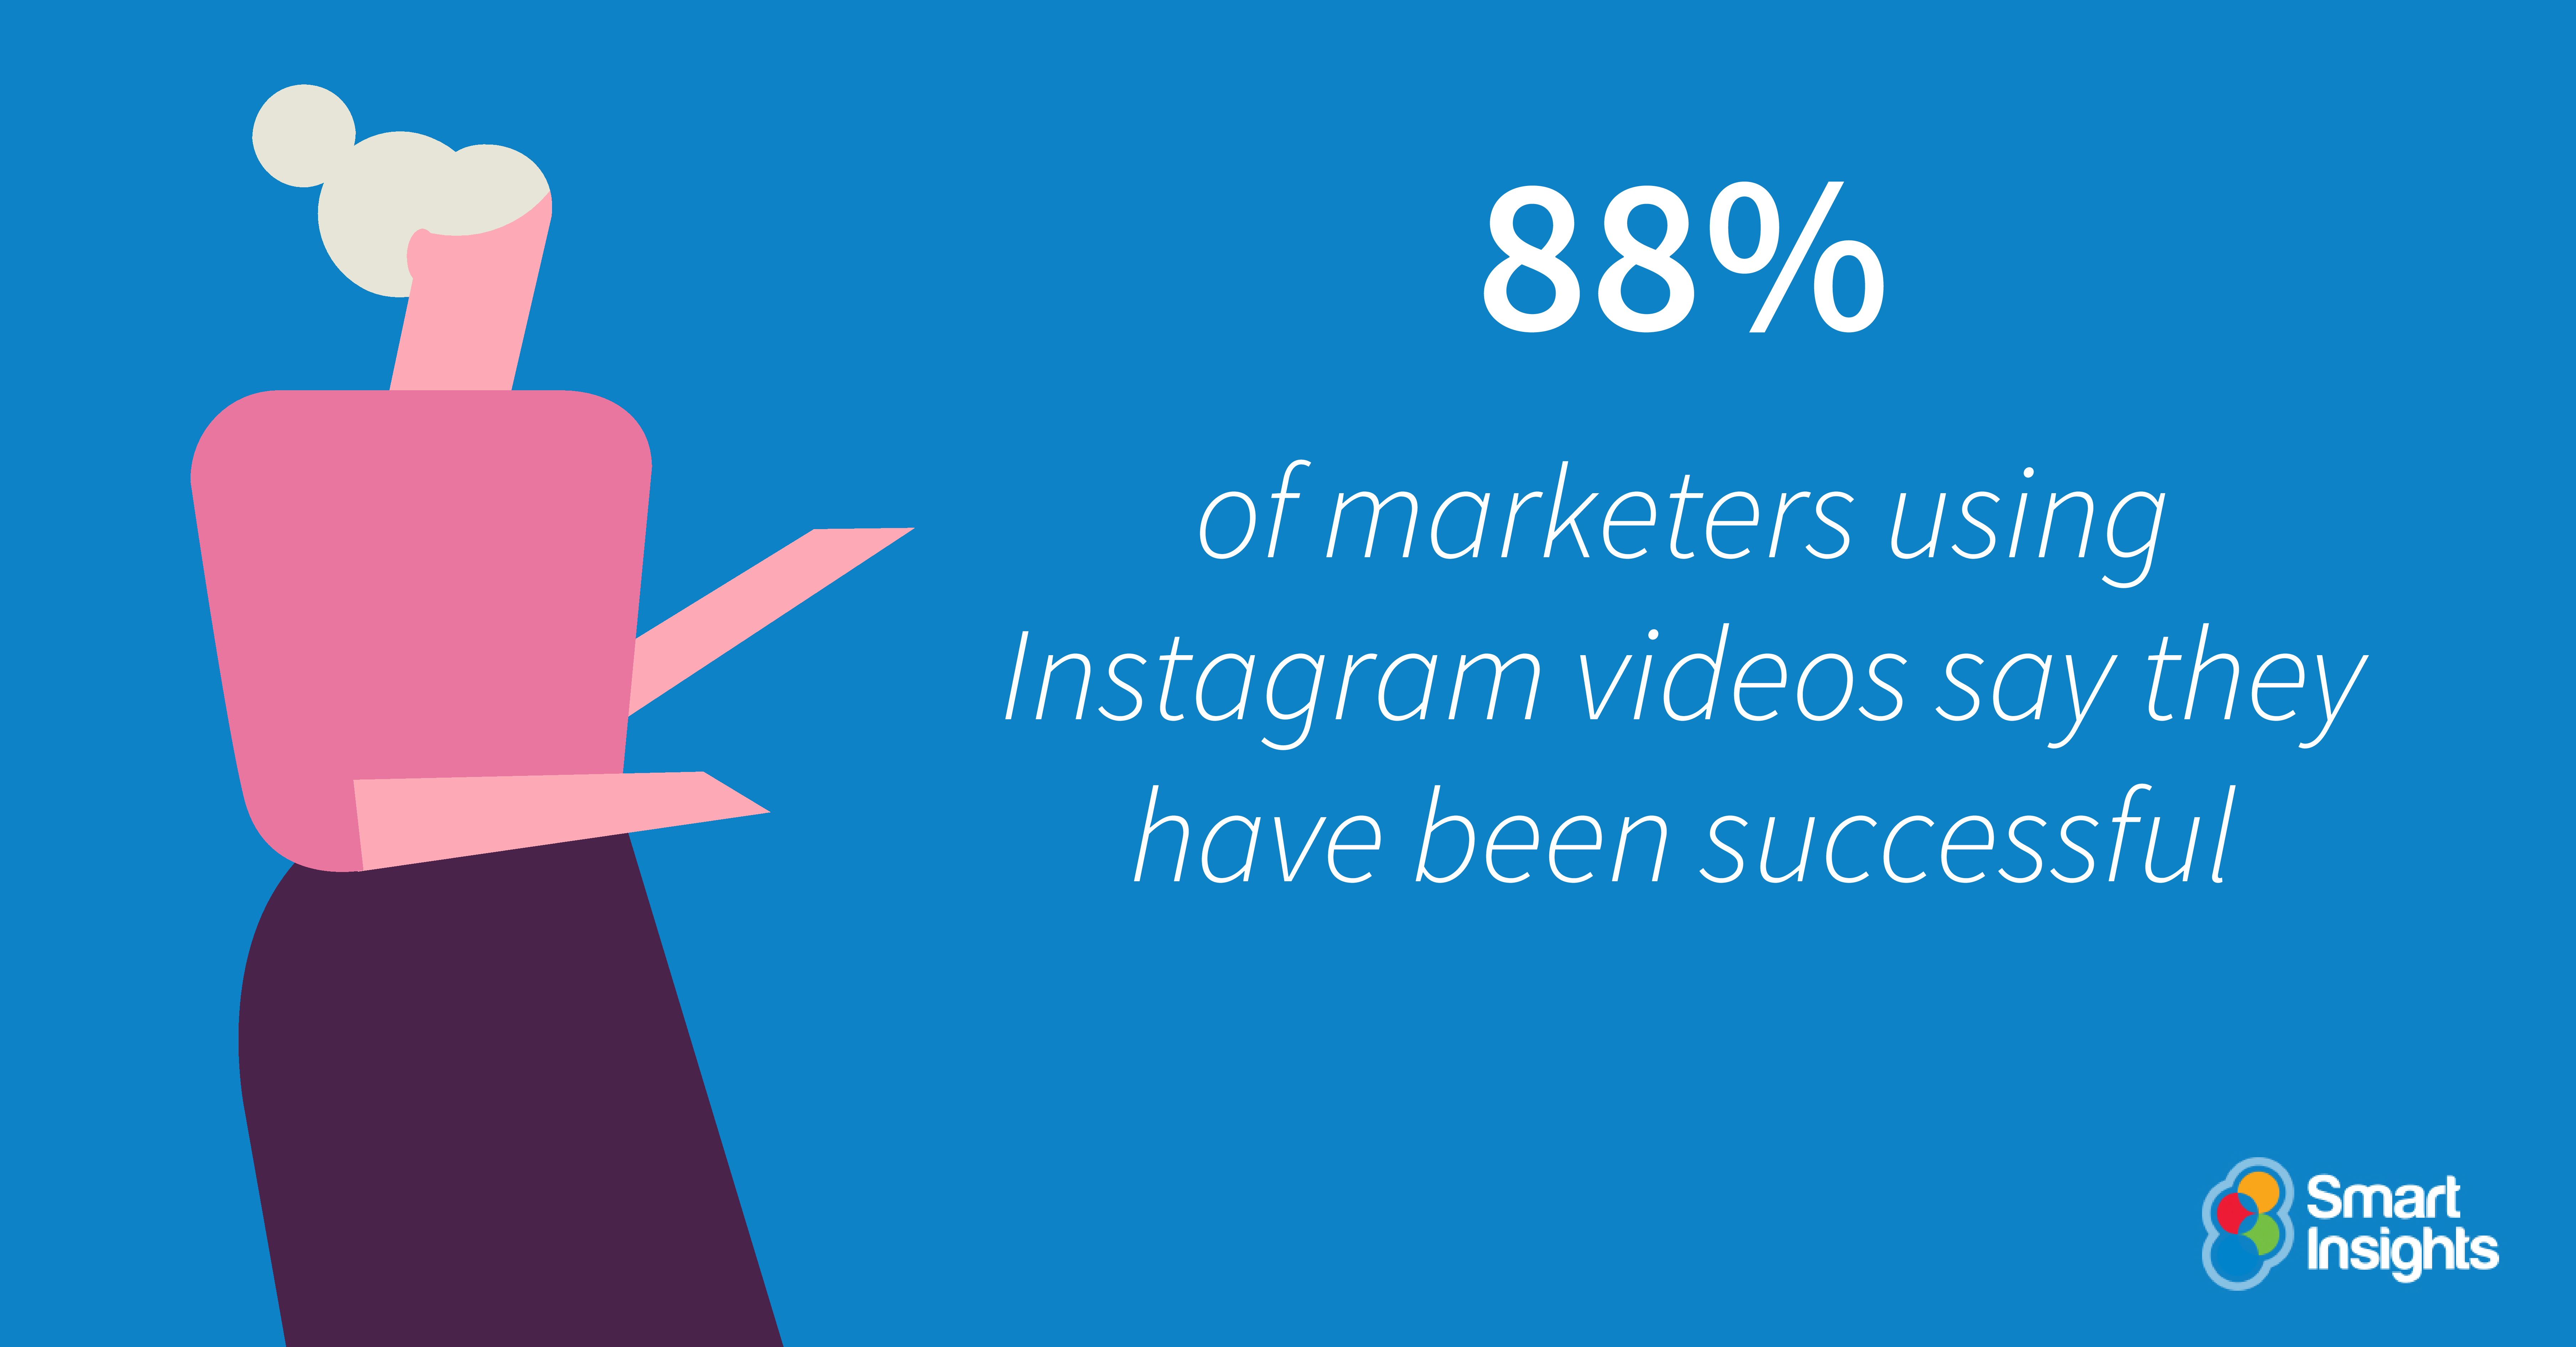 L'88% degli operatori di marketing che utilizzano i video di Instagram dichiara di aver avuto successo